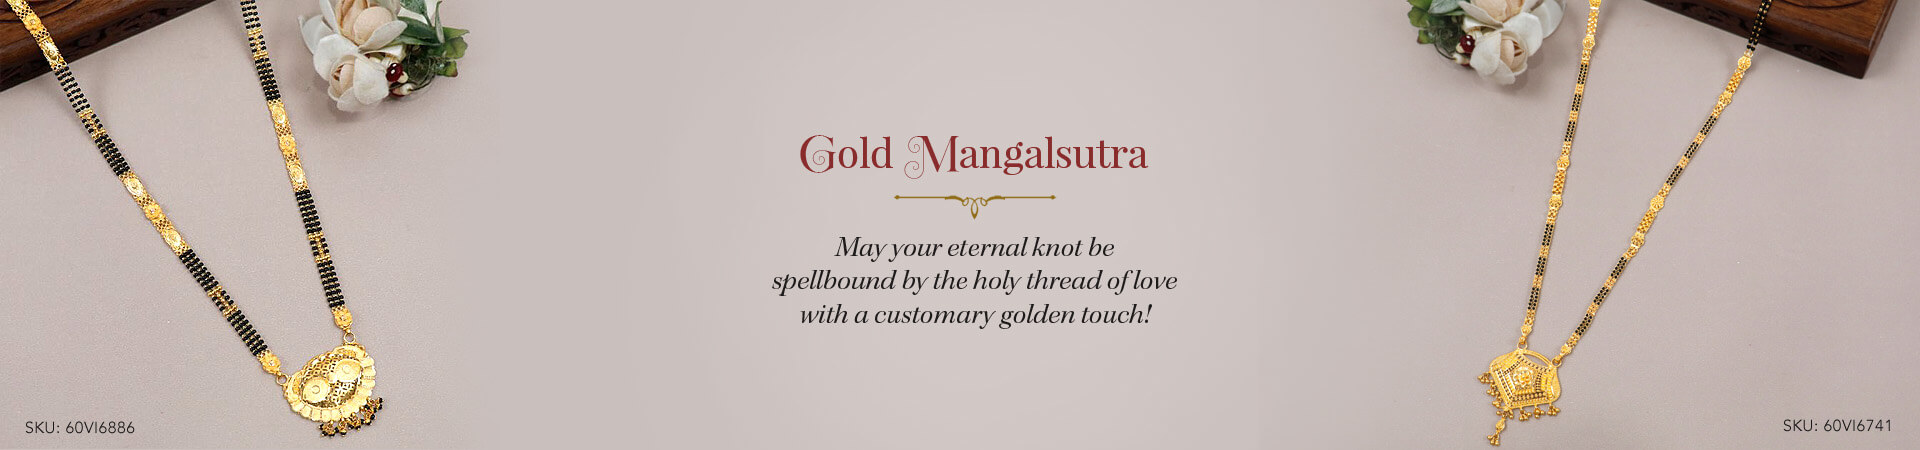 Gold Mangalsutra